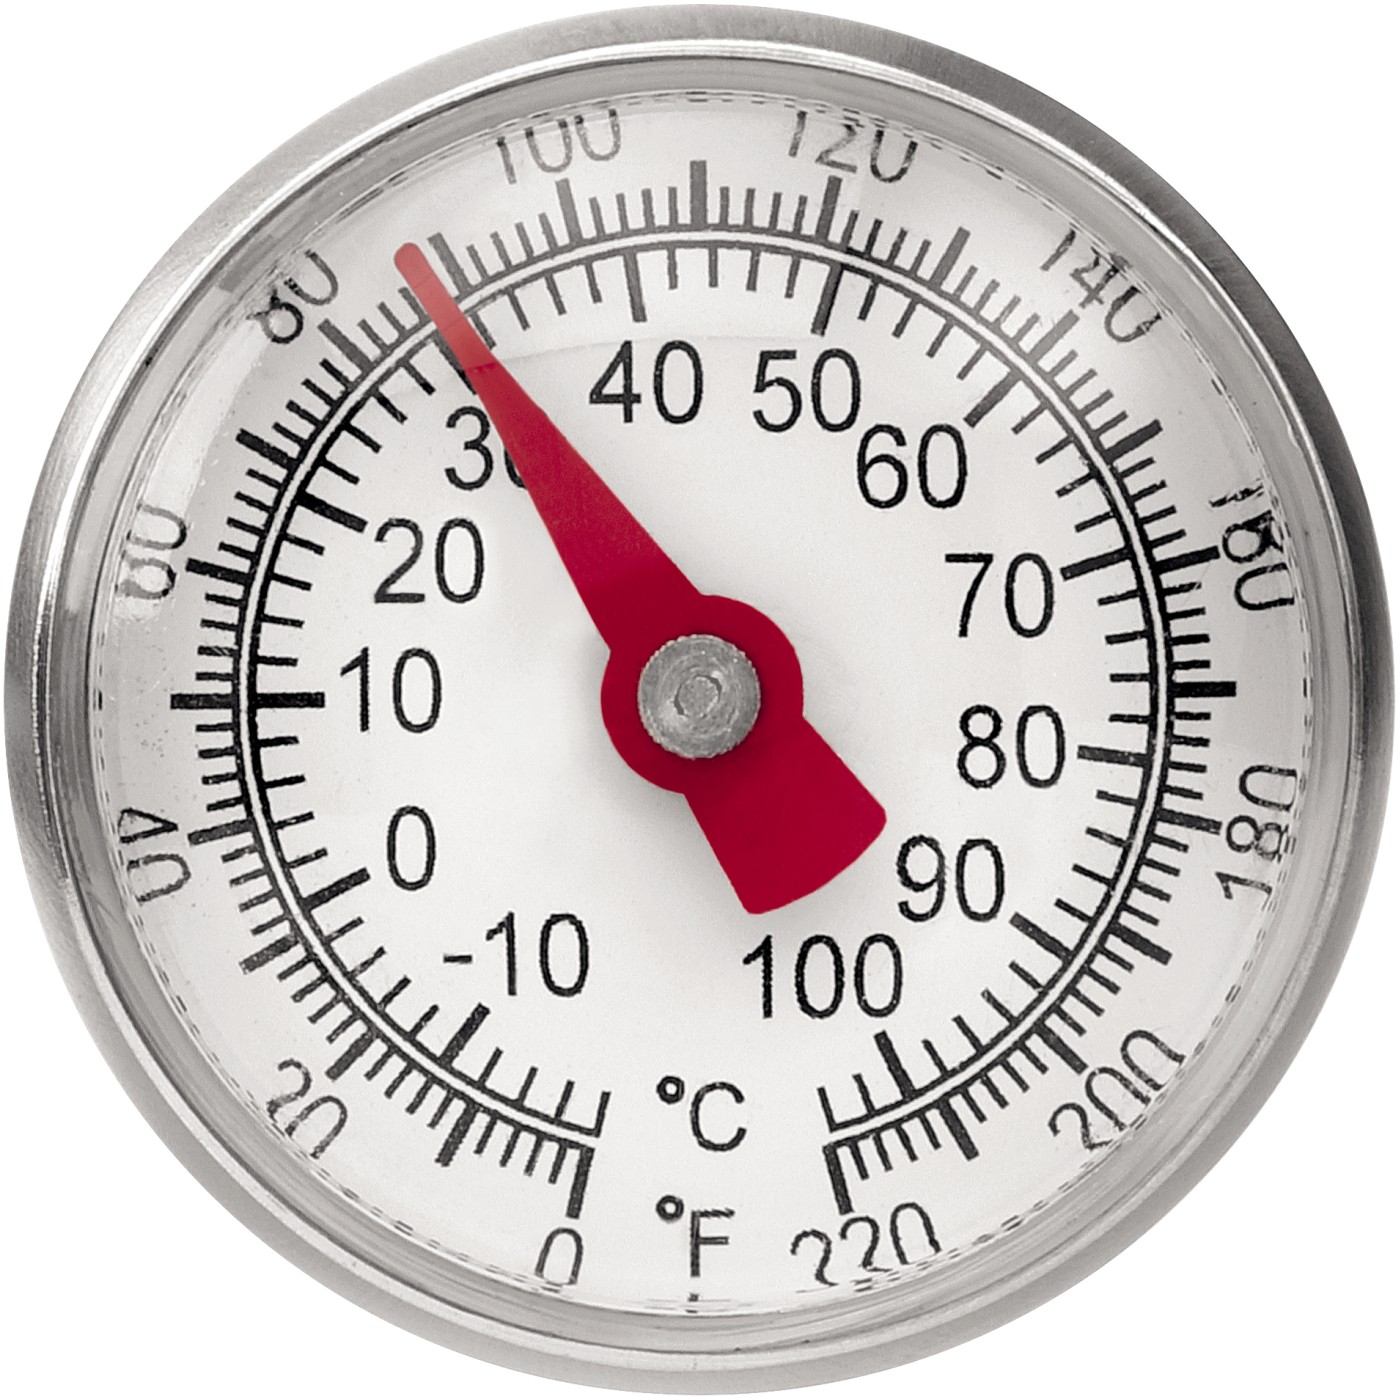  Bartscher Thermometer A1020 KTP 